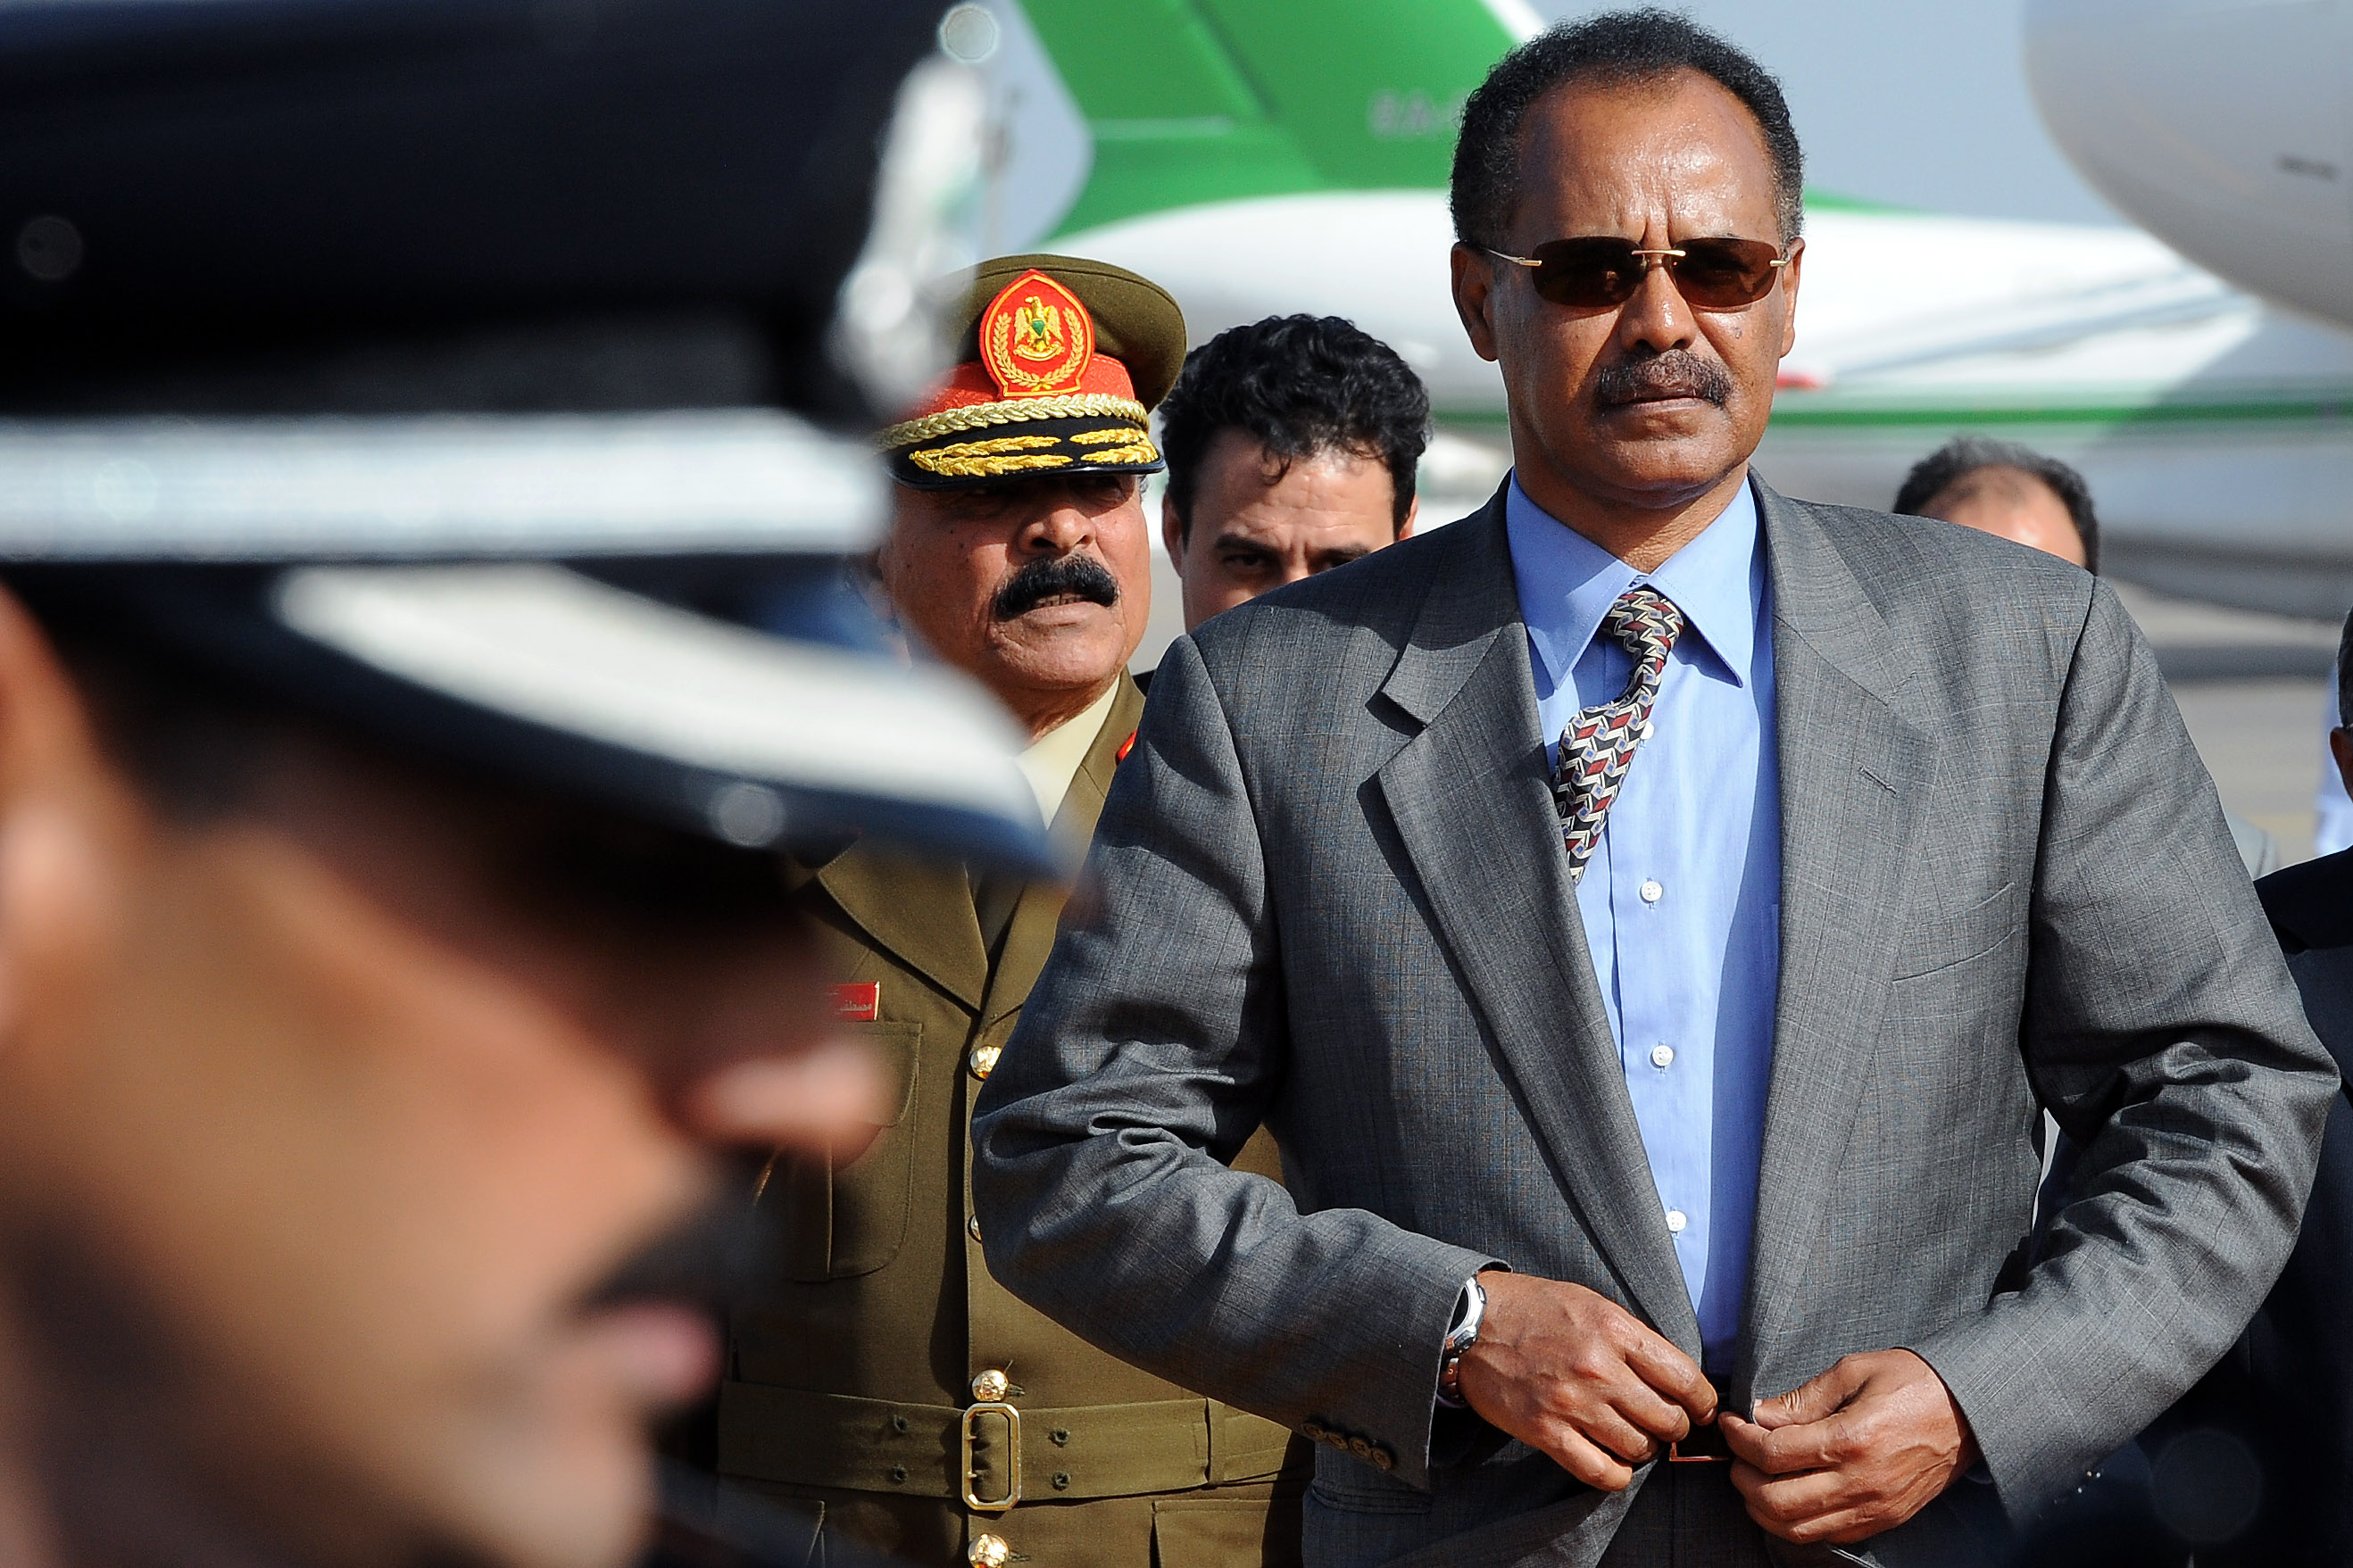 Isaias Afwerki - Eritreas första och enda president sedan landets självständighet 1993. Dessförinnan var han ledare för den beväpnade motståndsrörelsen som kämpade för Eritreas självständighet.  Än idag är Eritrea utan konstitution och Afwerki styr landet